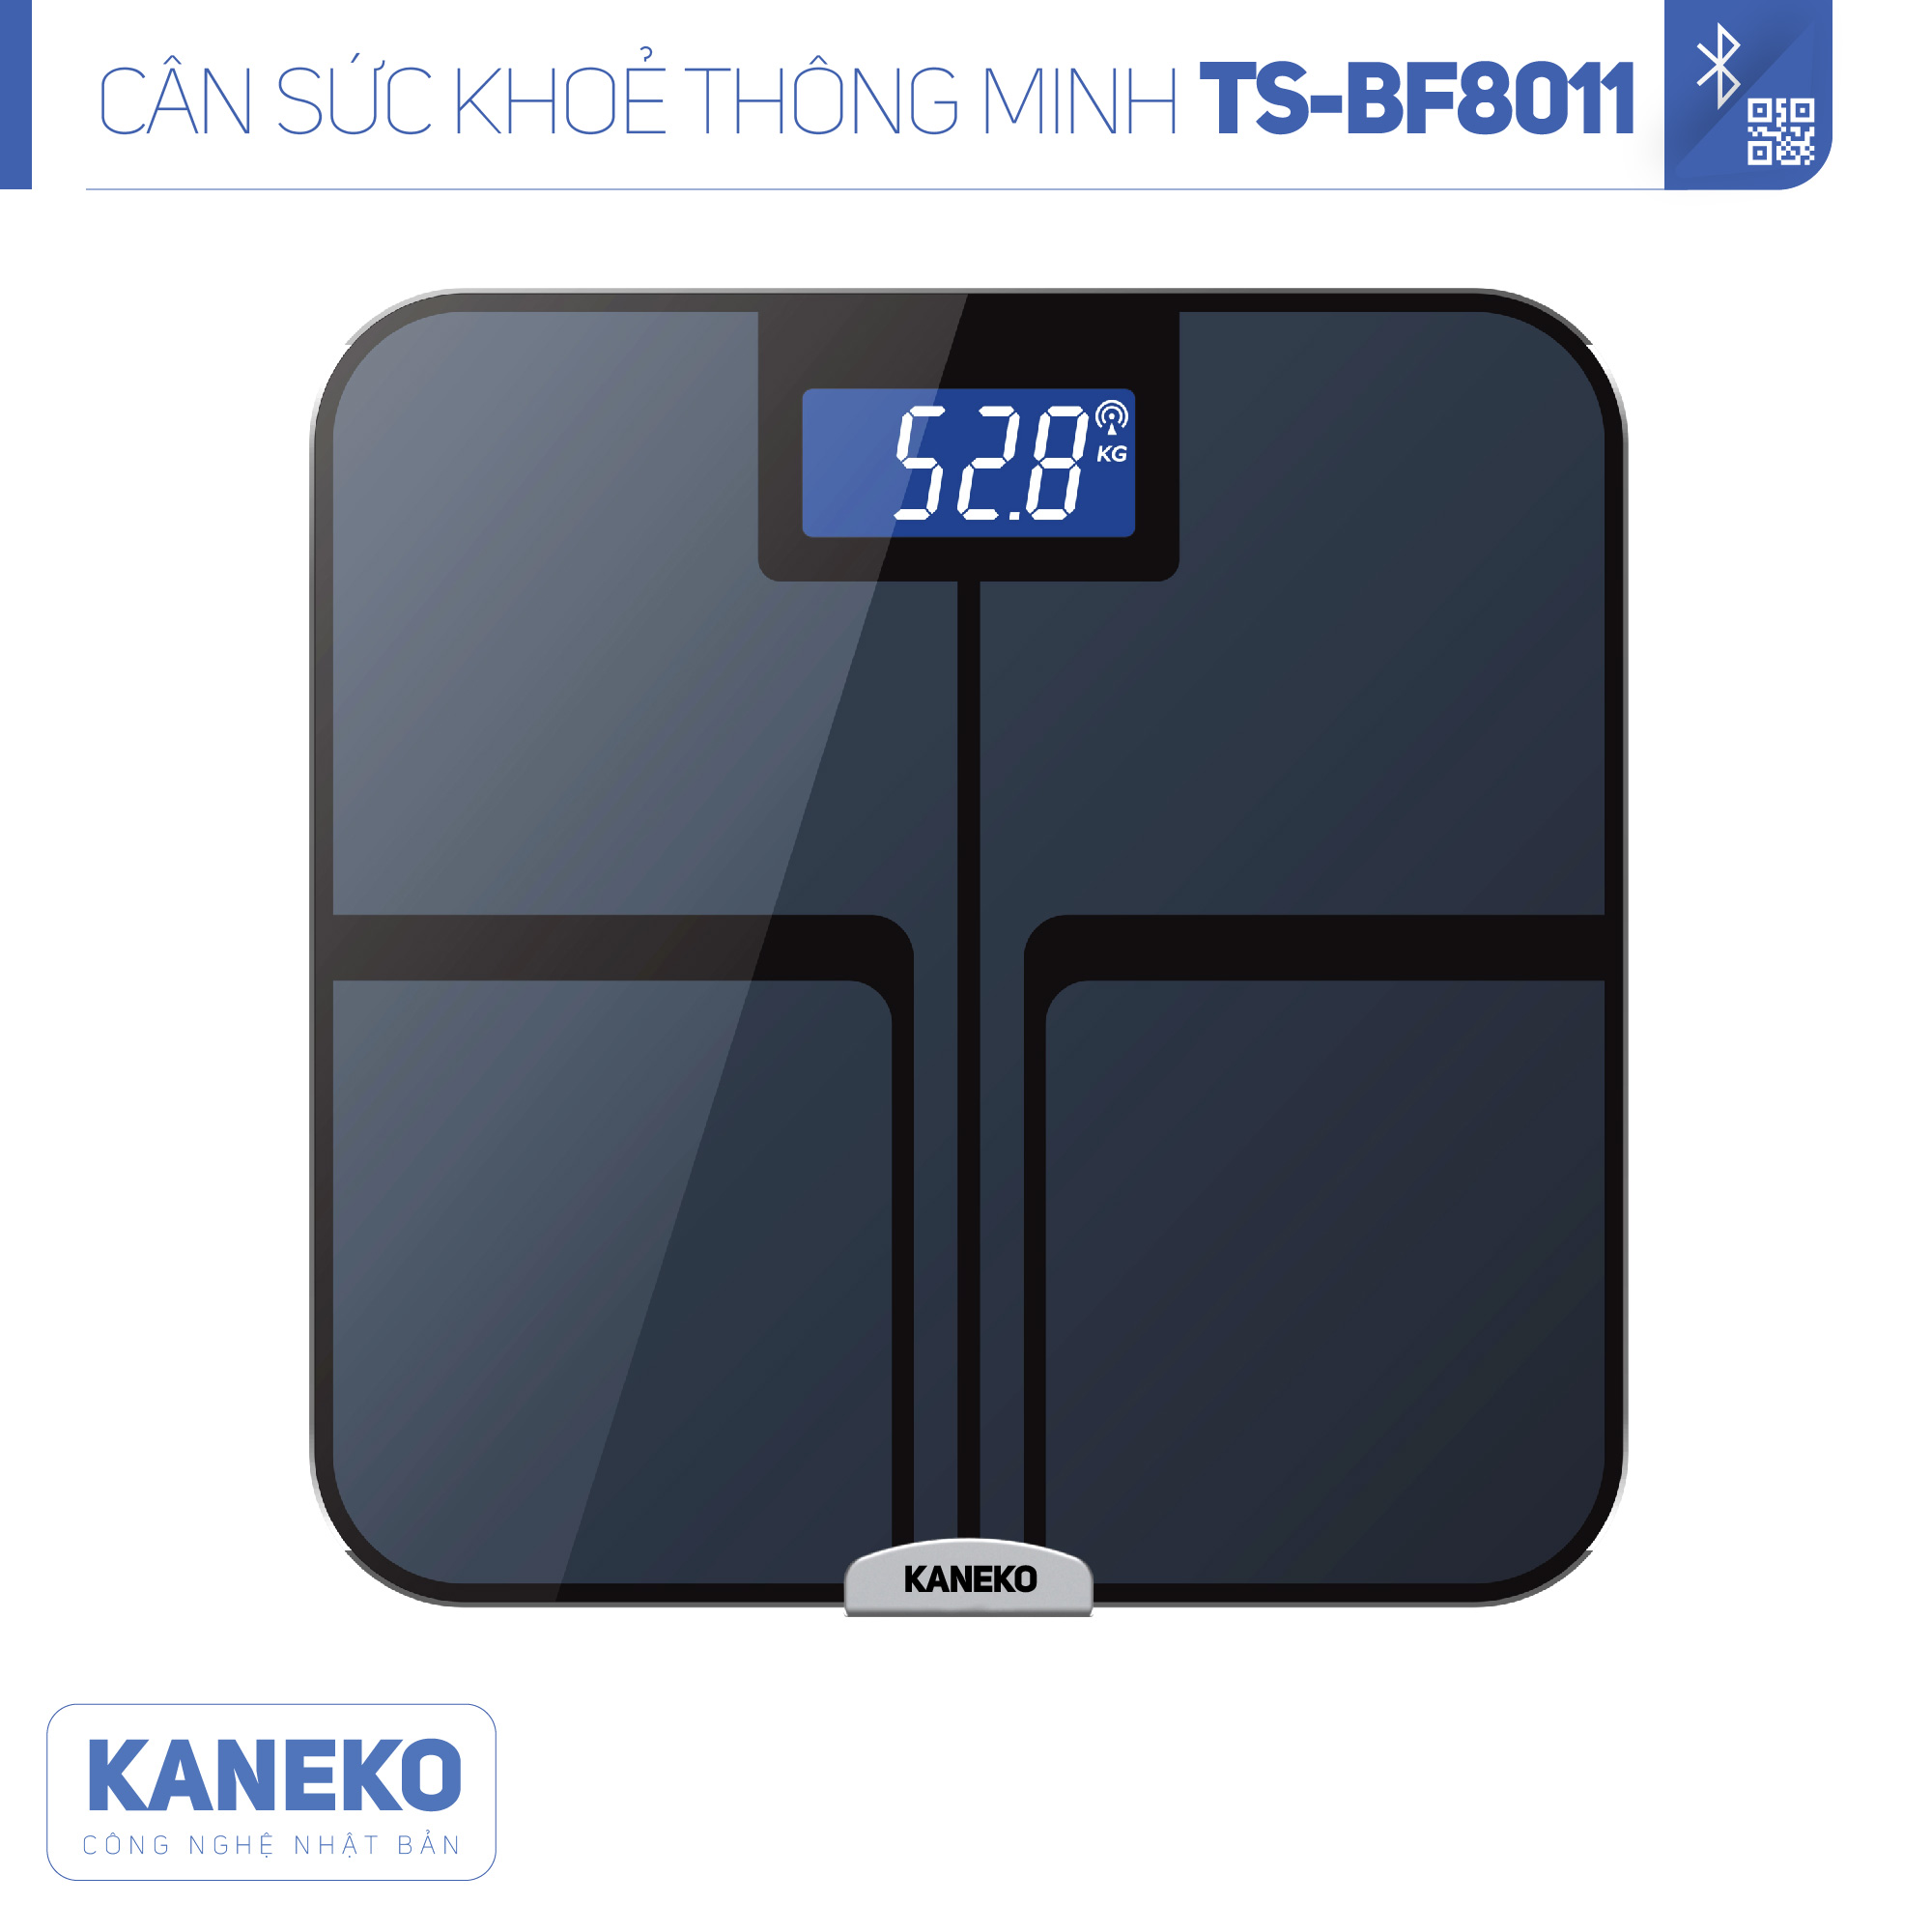 Cân sức khoẻ thông minh điện tử KANEKO TSBF8011,cân phân tích sức khoẻ điện tử,cân sức khoẻ dành cho gia đình,cân điện tử thông minh kết nối bluetooth,cân đo 12 chỉ số cơ thể